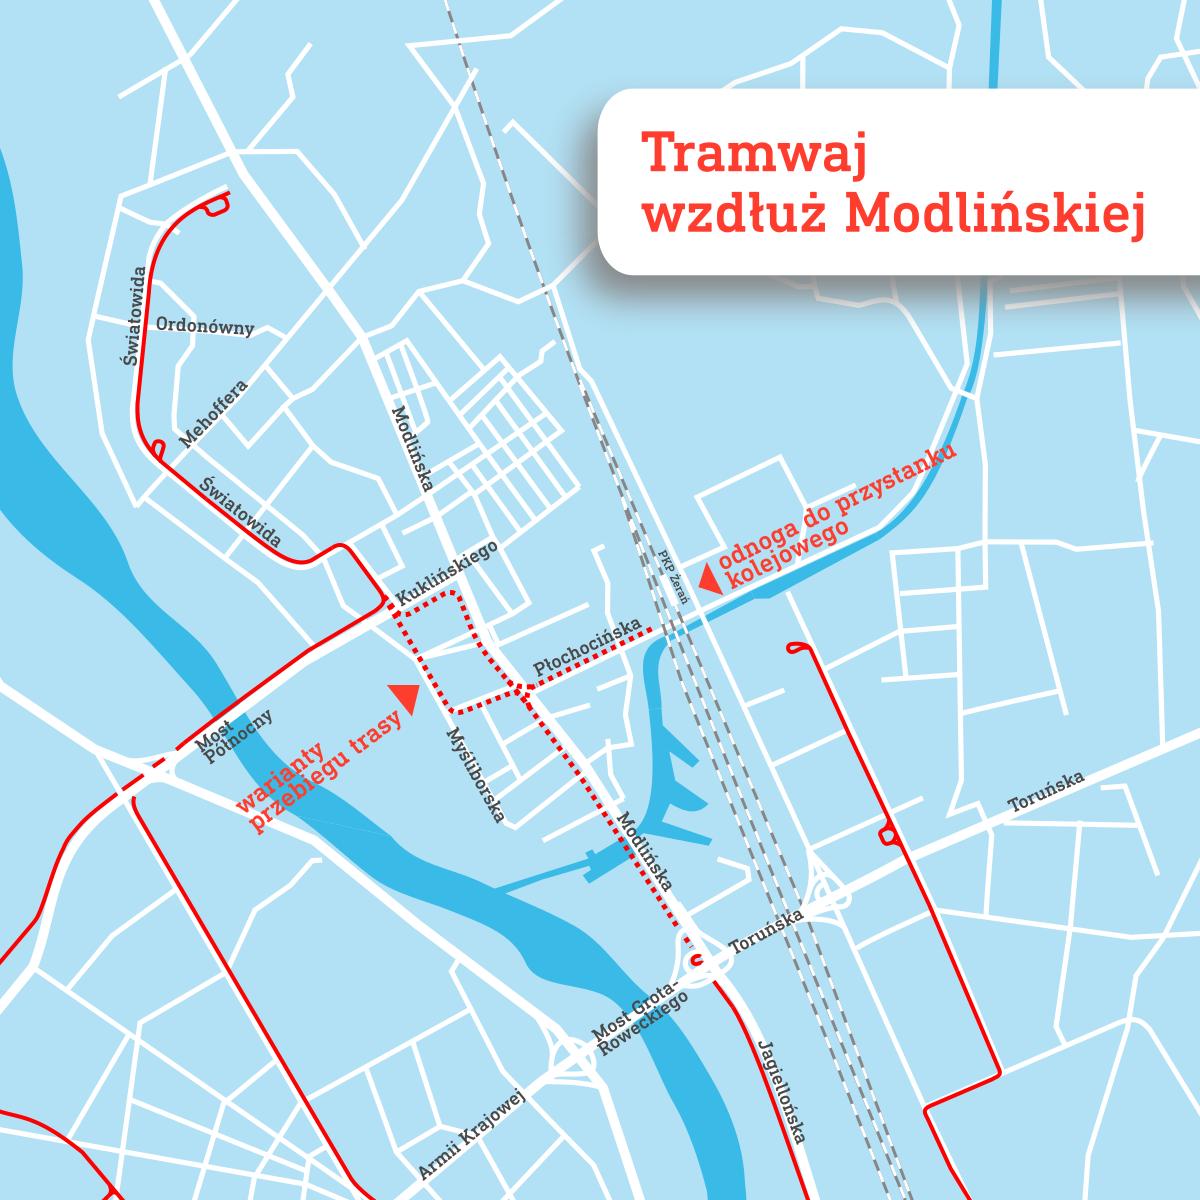 Tramwaj wzdłuż Modlińskiej w Warszawie – umowa na dokumentację podpisana